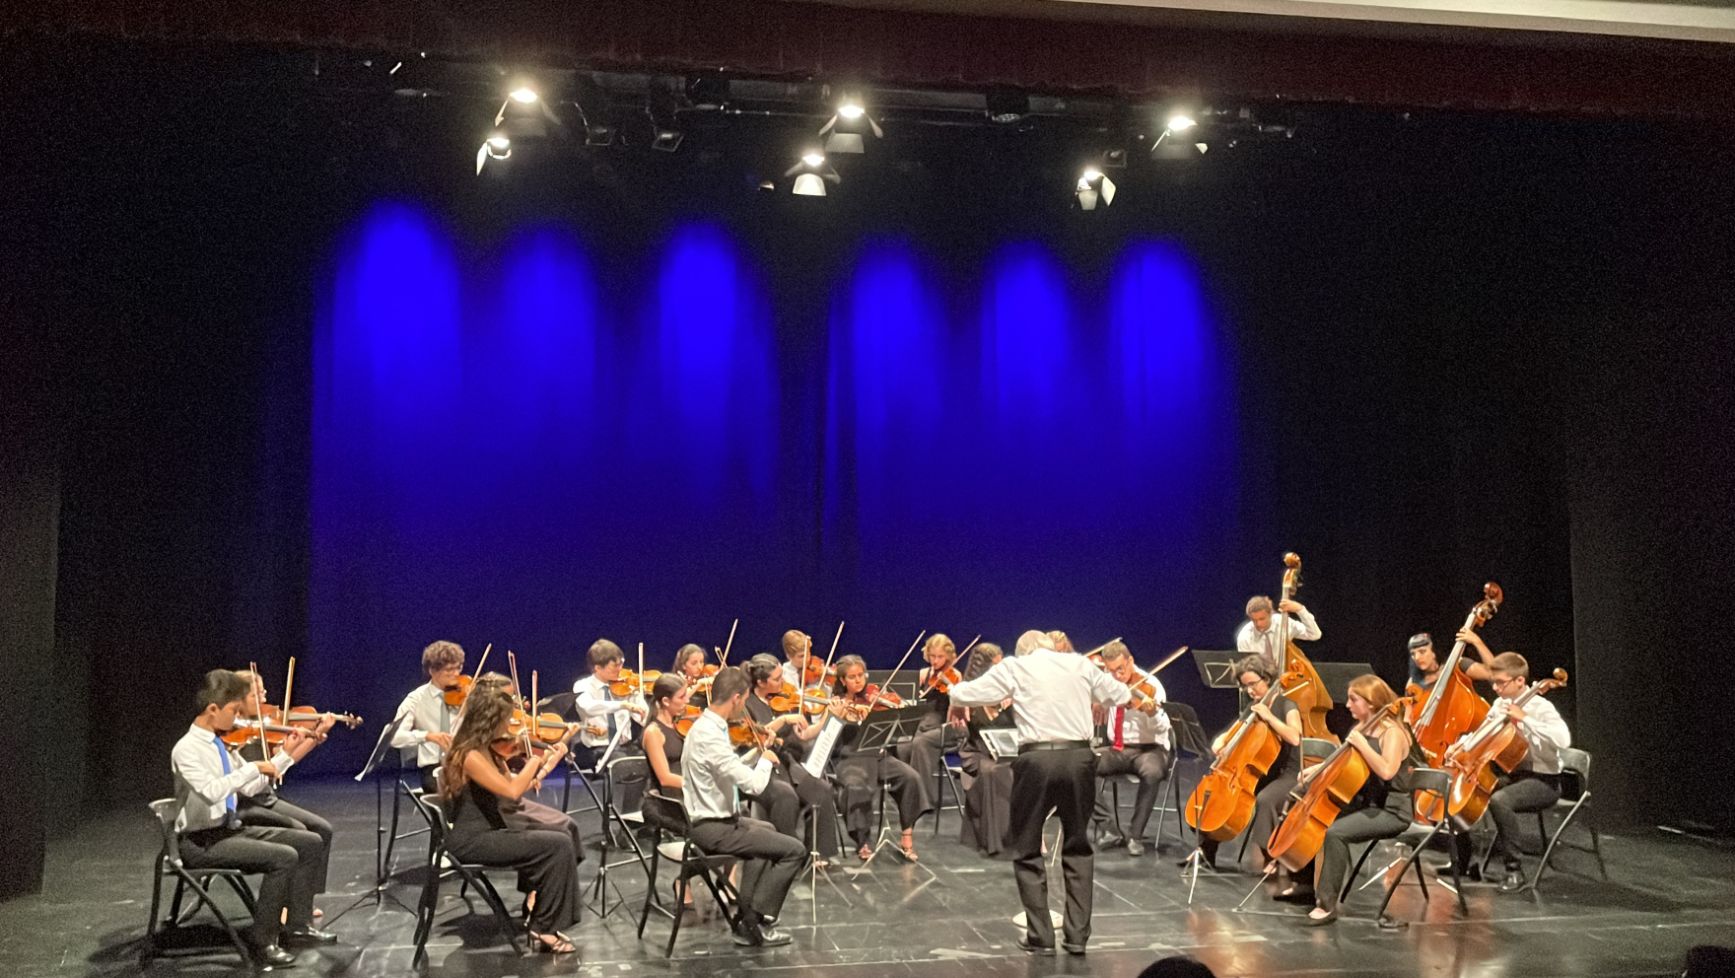 Sons ao Crepúsculo apresentou o 1.º Estágio de orquestra em Lagos, com a Orquestra Sinfónica Juvenil, com direcção de Christopher Bochmann